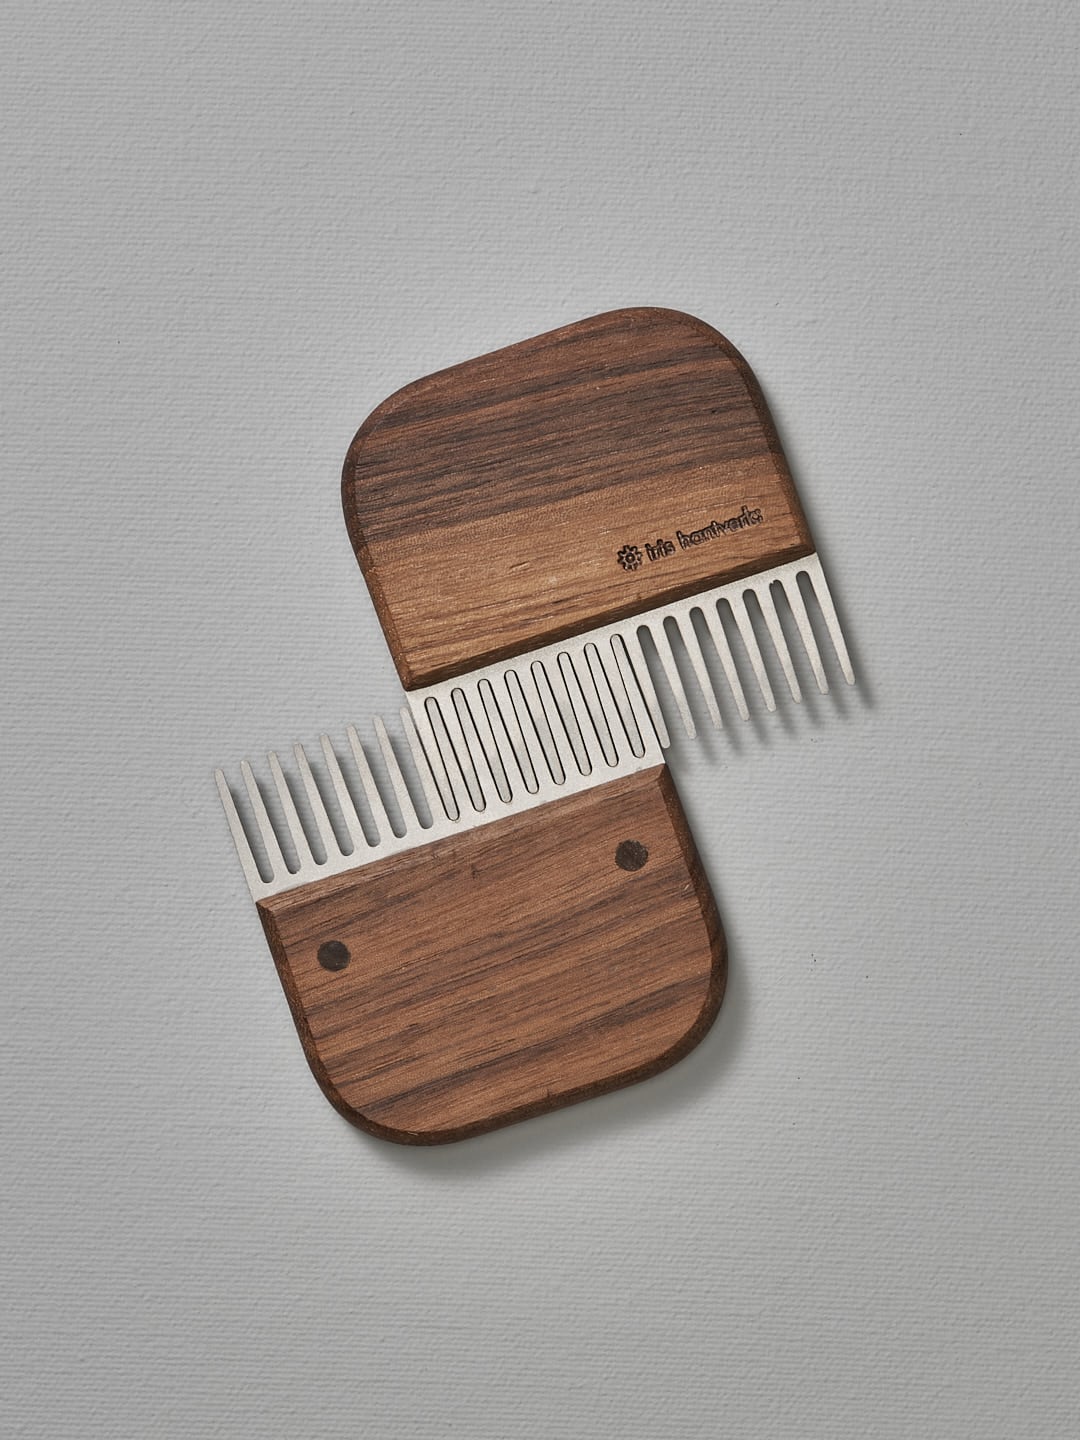 A Beard Comb – Walnut by Iris Hantverk on top of a white surface.